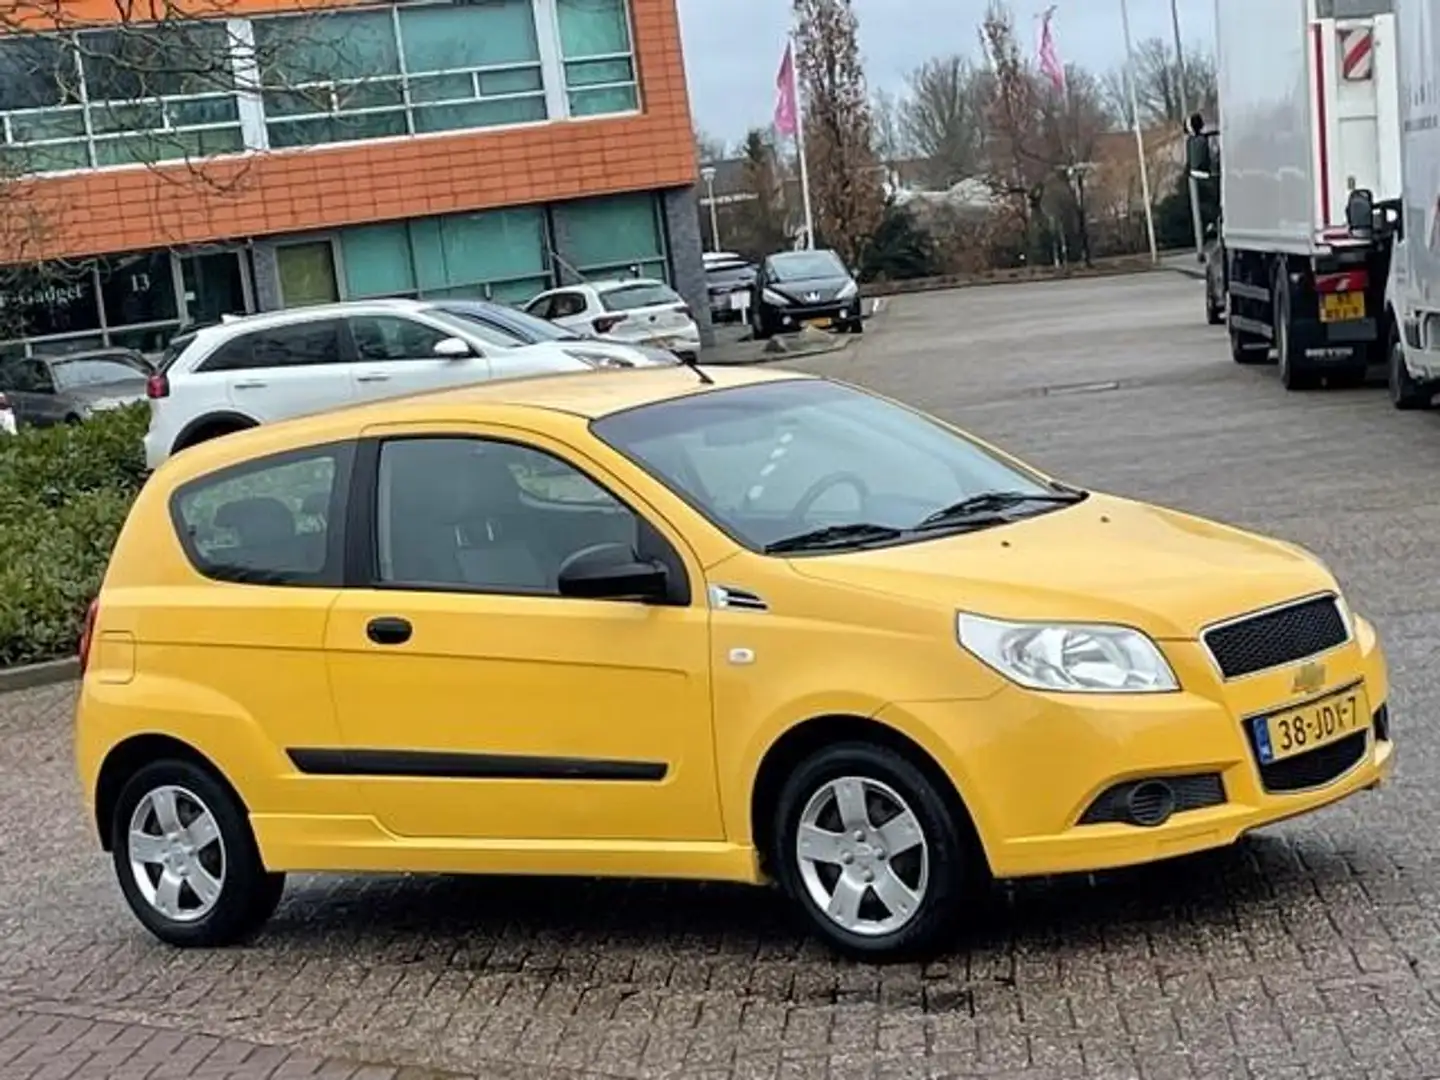 Chevrolet Aveo 1.2 16V L,bj.2009, kleur:geel,APK tot 02/2025 en N žuta - 2